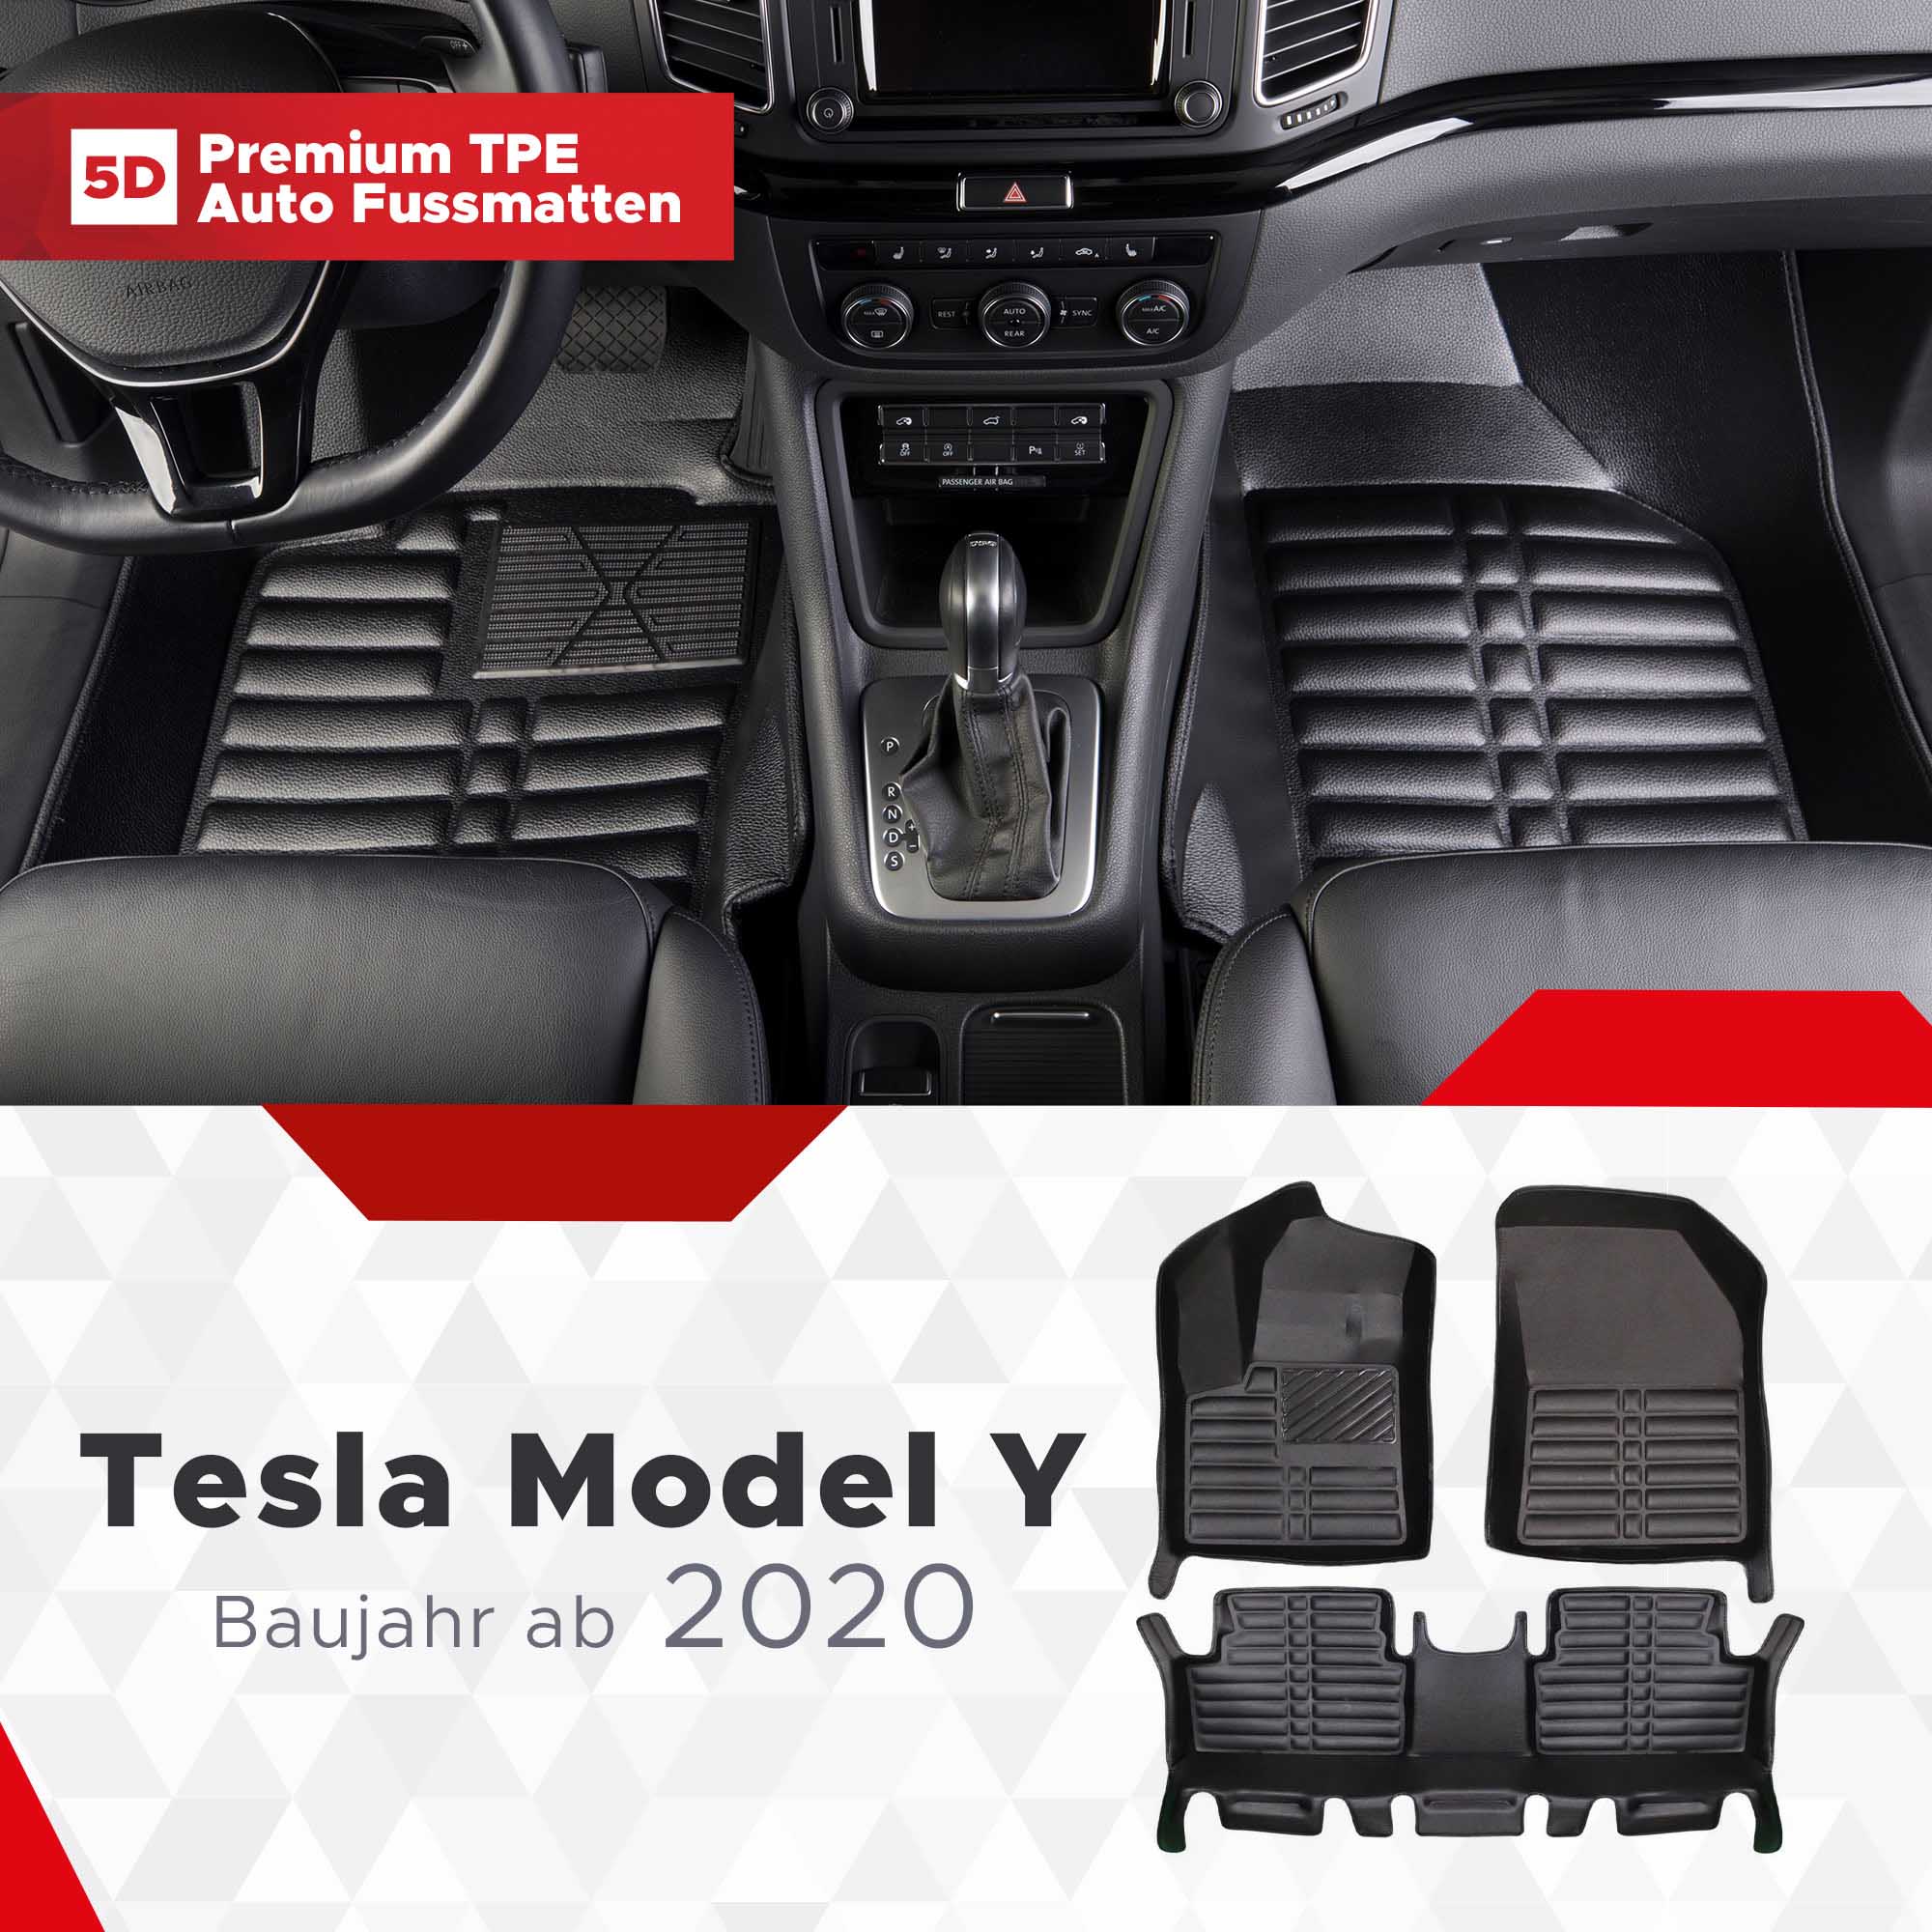 Wirklich geruchlose Fussmatten - Model Y Allgemeines - TFF Forum - Tesla  Fahrer & Freunde